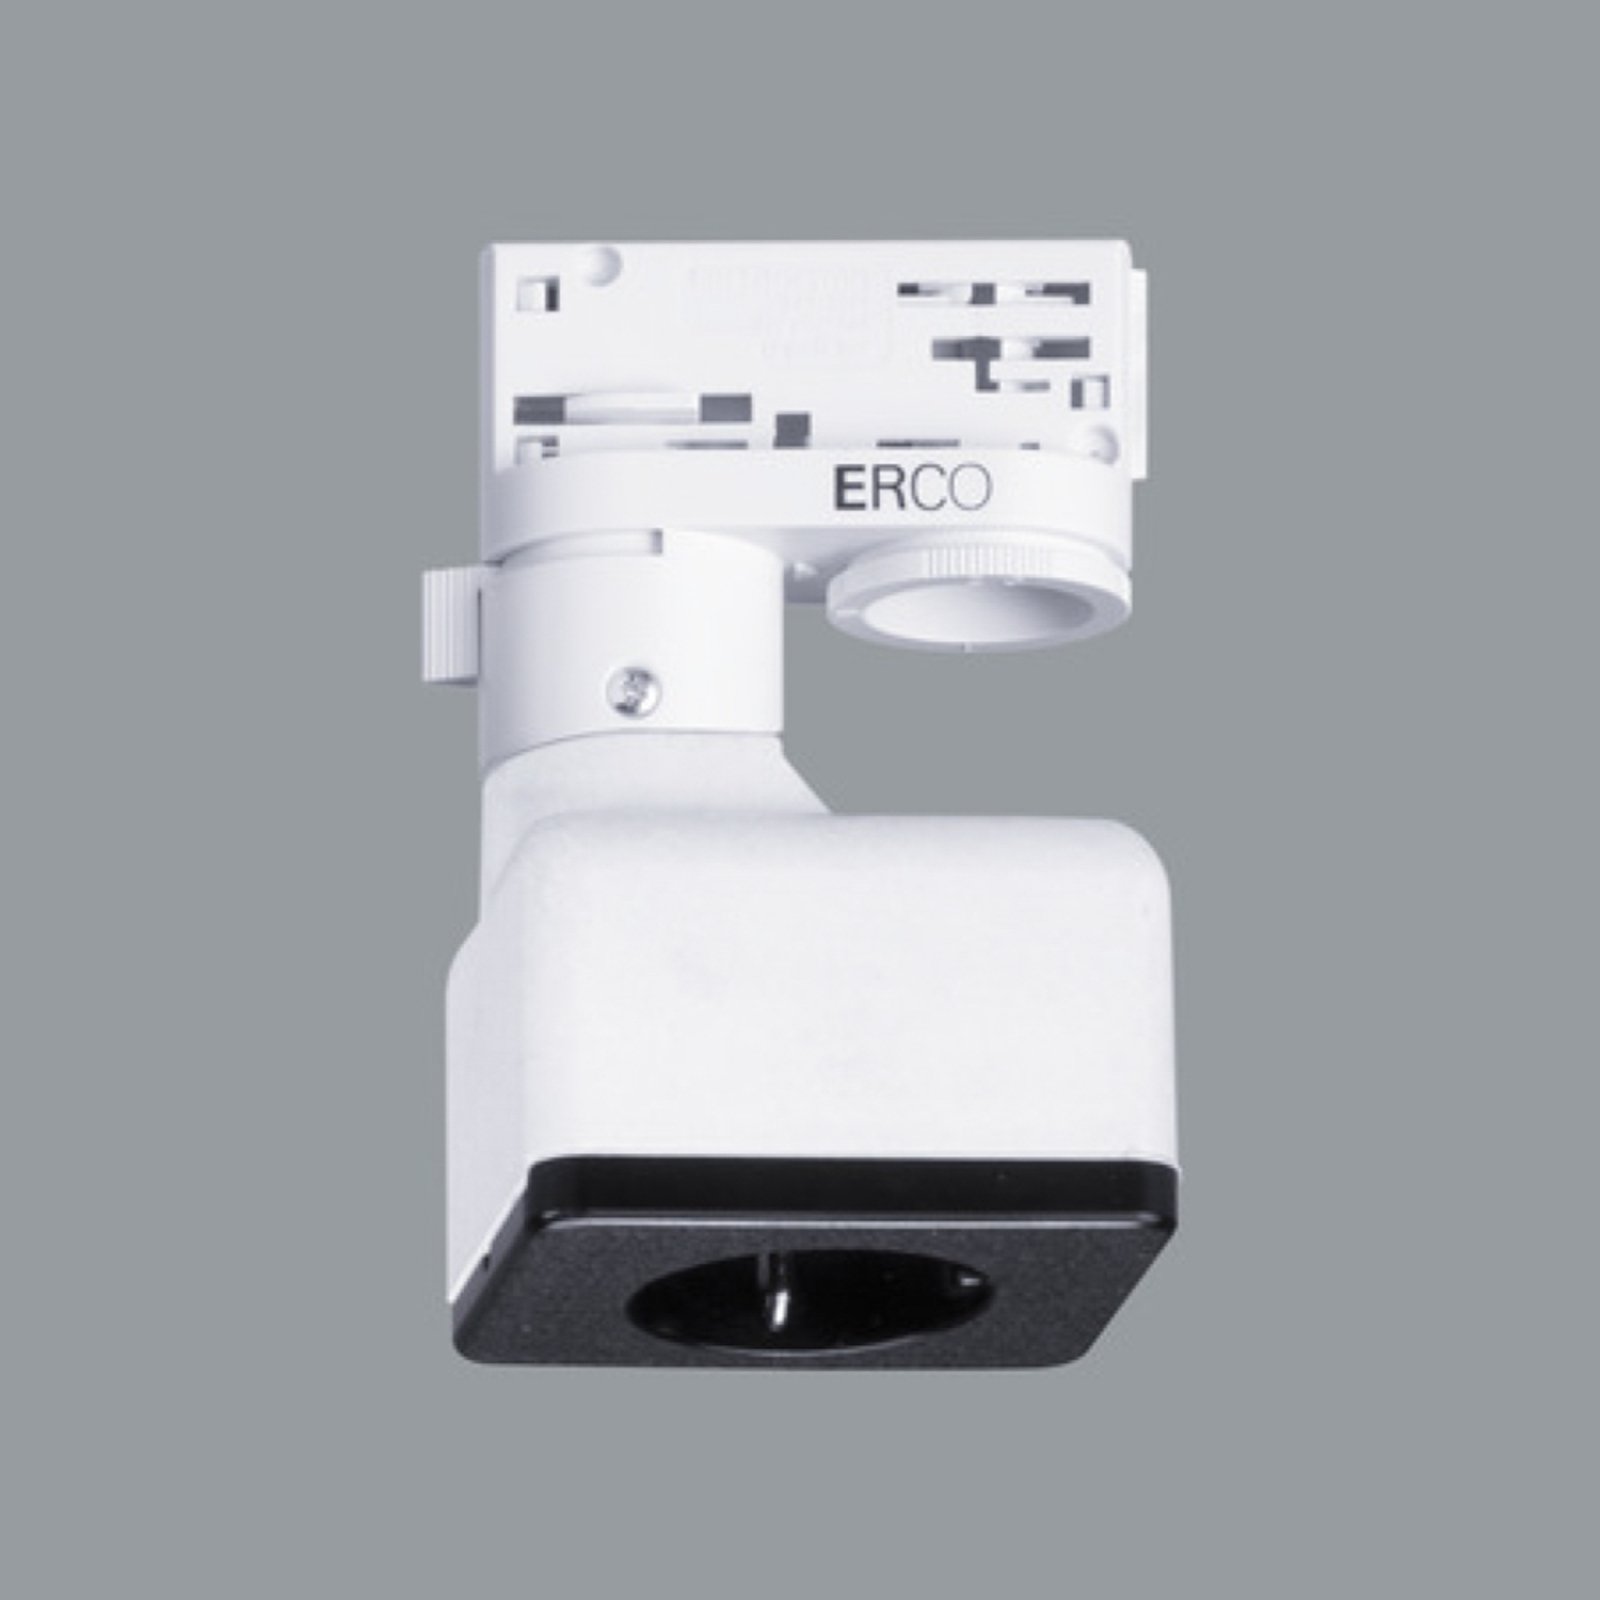 ERCO adapter trifase con presa Schuko, bianco